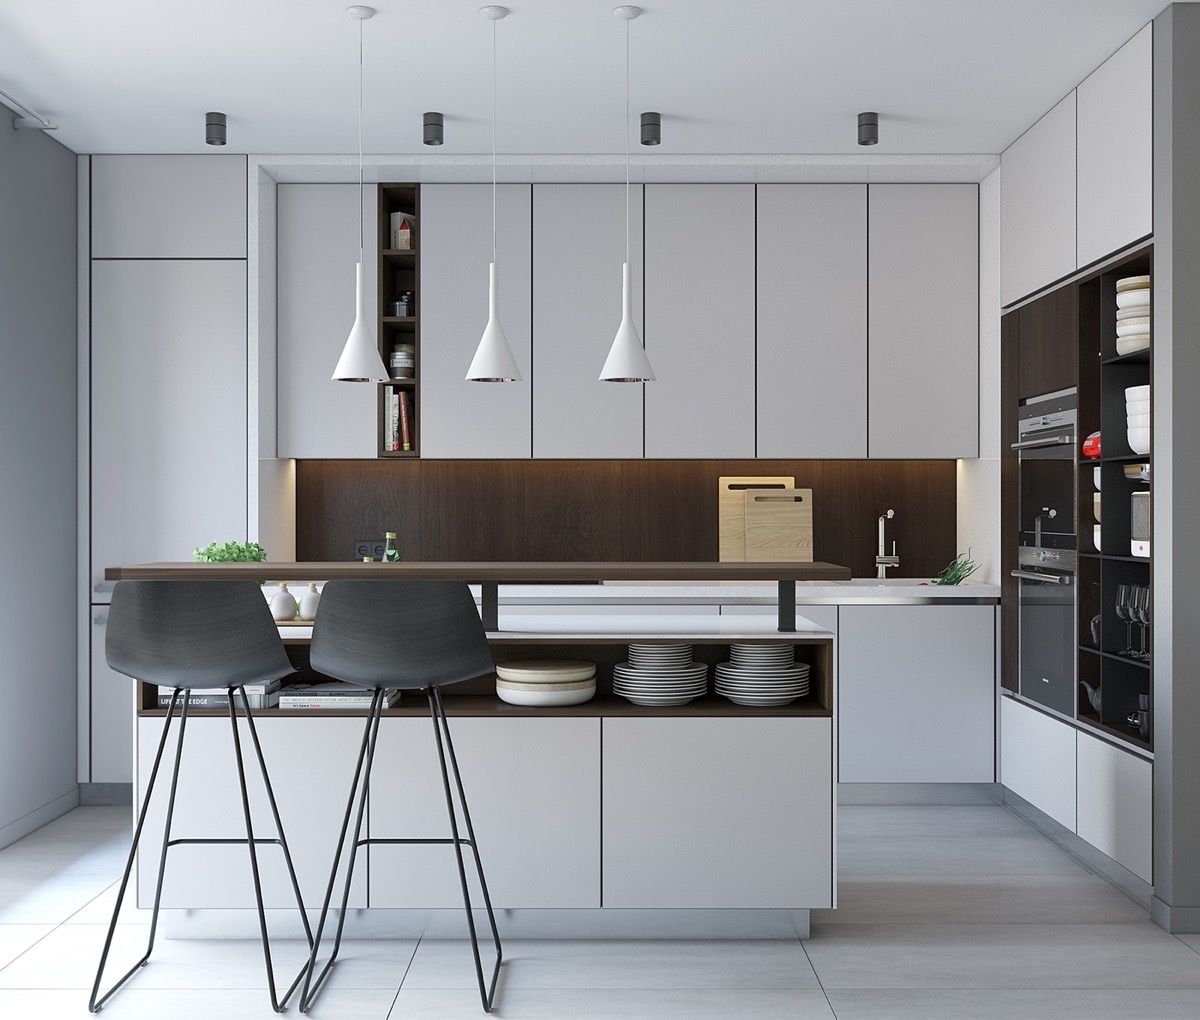 Ứng dụng phong cách minimalist  vào phòng bếp thêm ấn tượng và đẹp mắt 